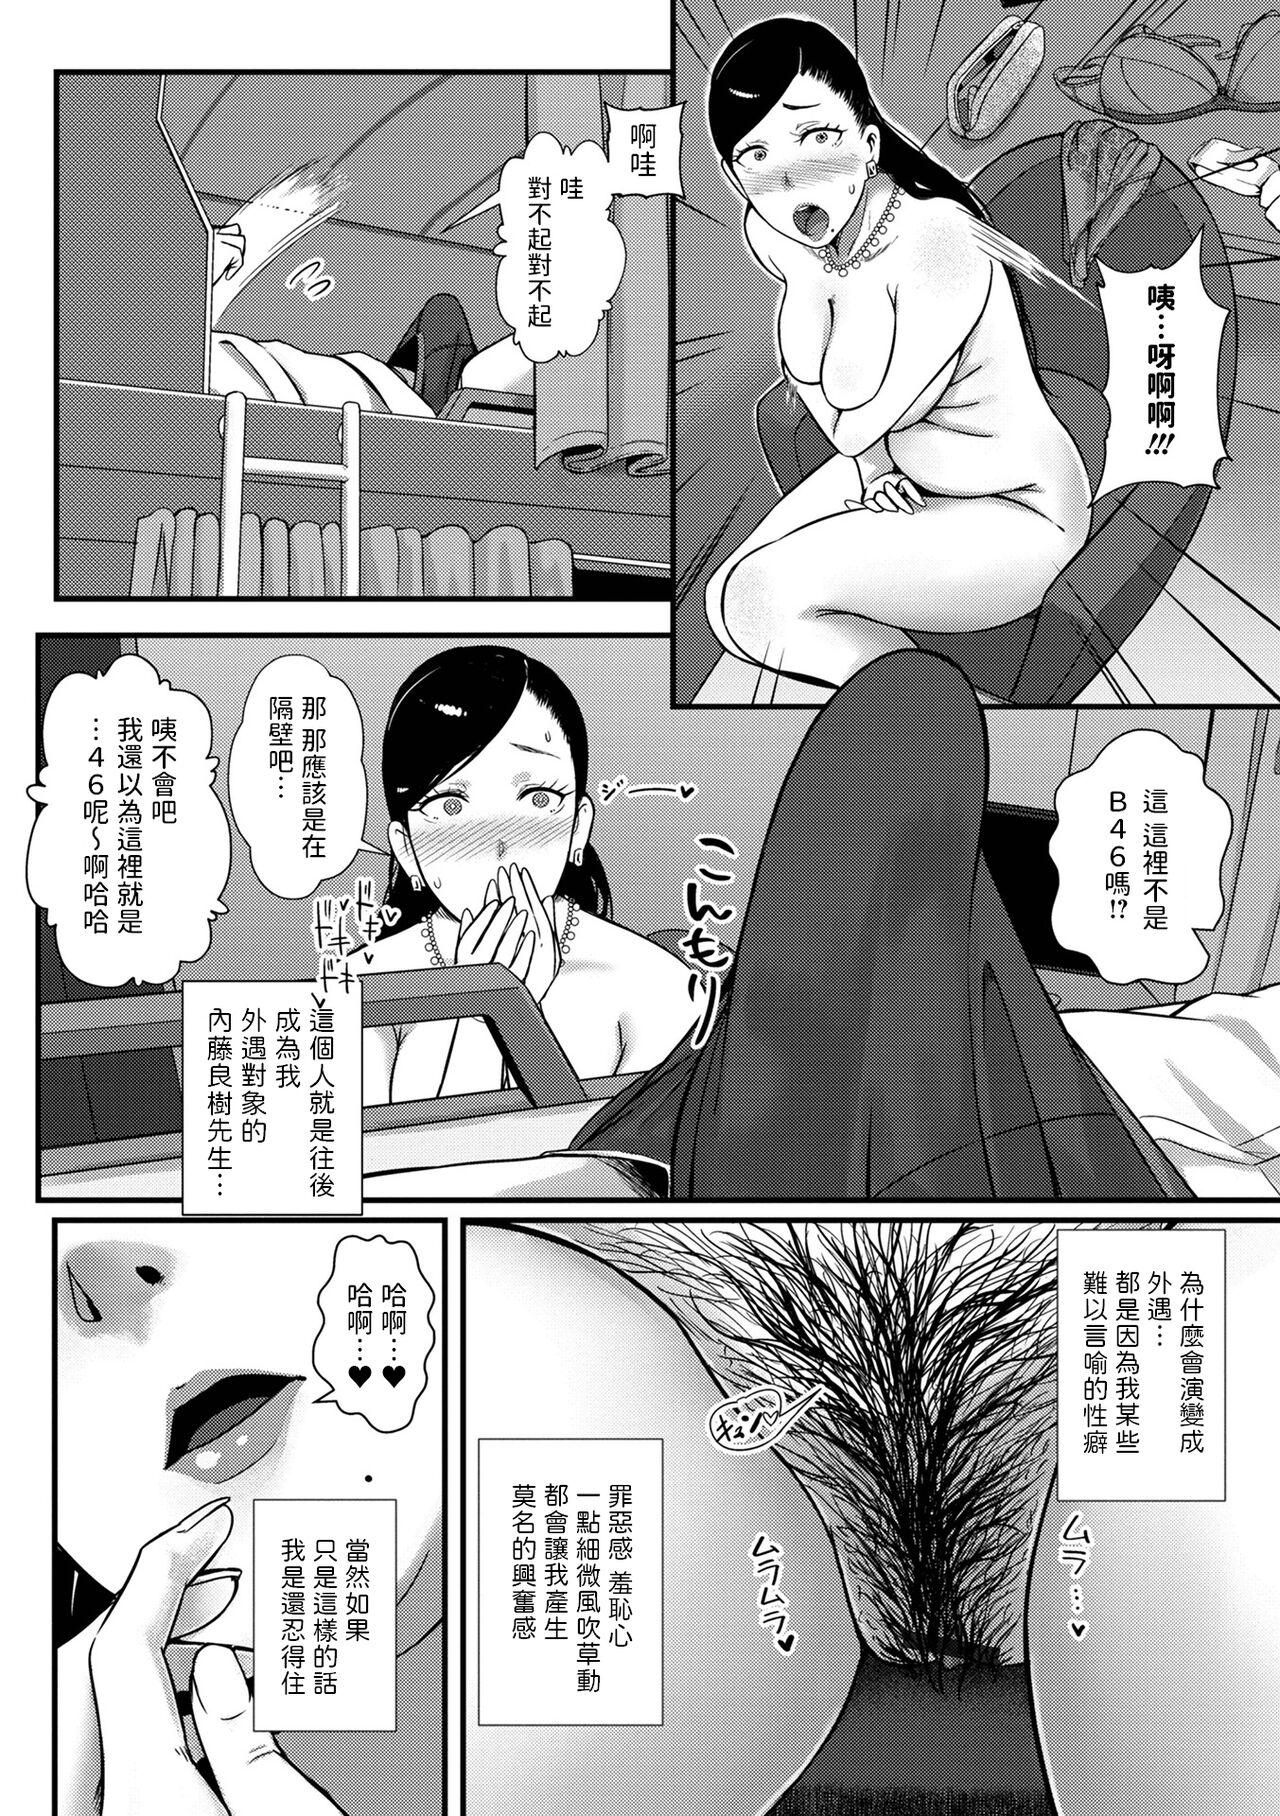 [YOSHITORA]  妻だけが居るはずの部屋  (コミック刺激的 SQUIRT！！ Vol.31)  中文翻譯 3